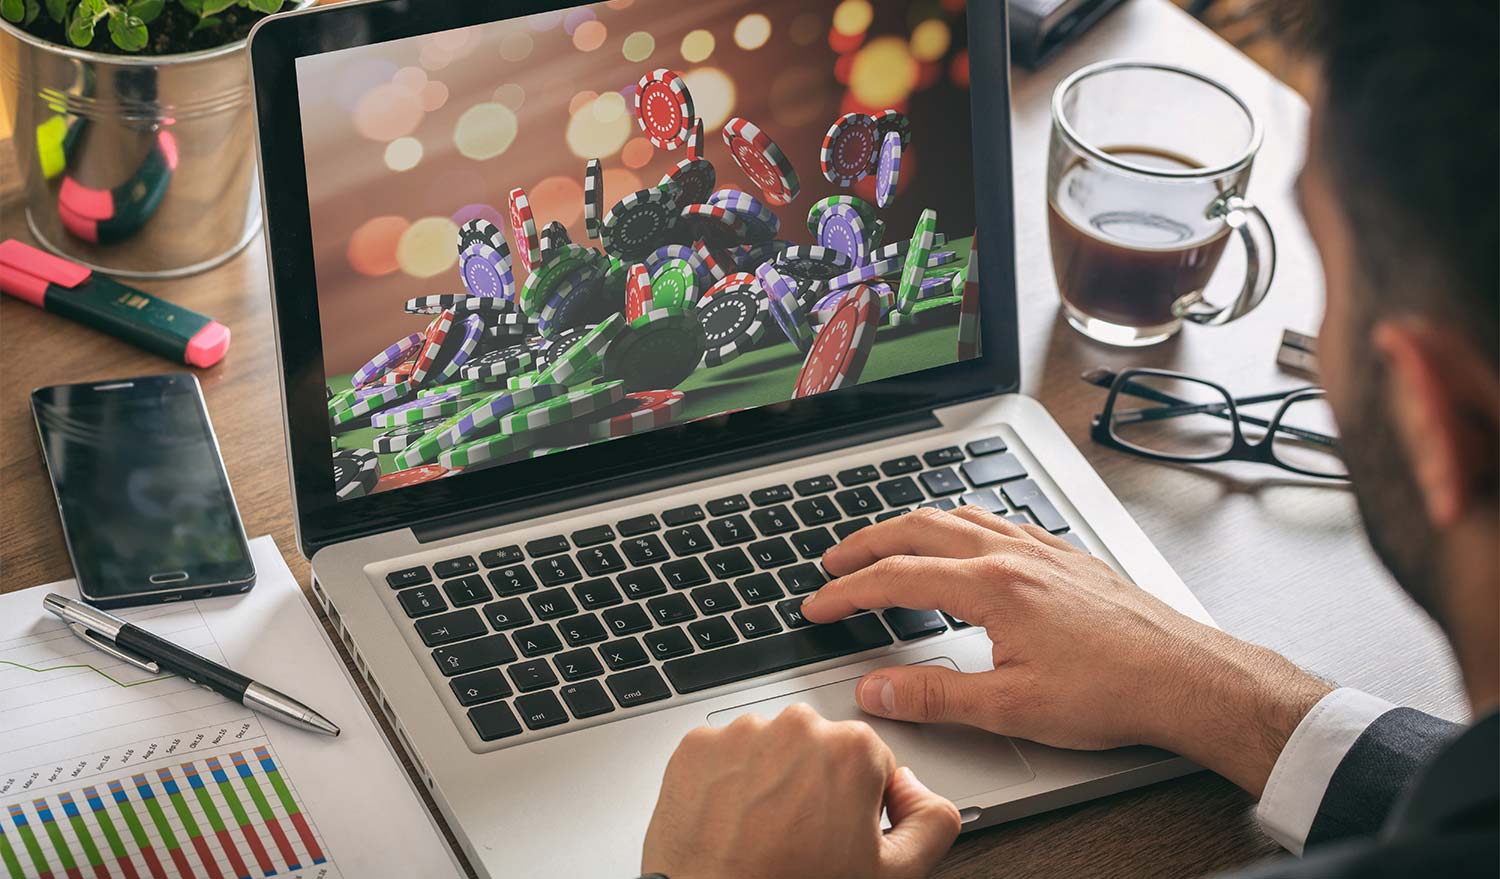 Mann spielt in einem Online Casino an seinem Laptop